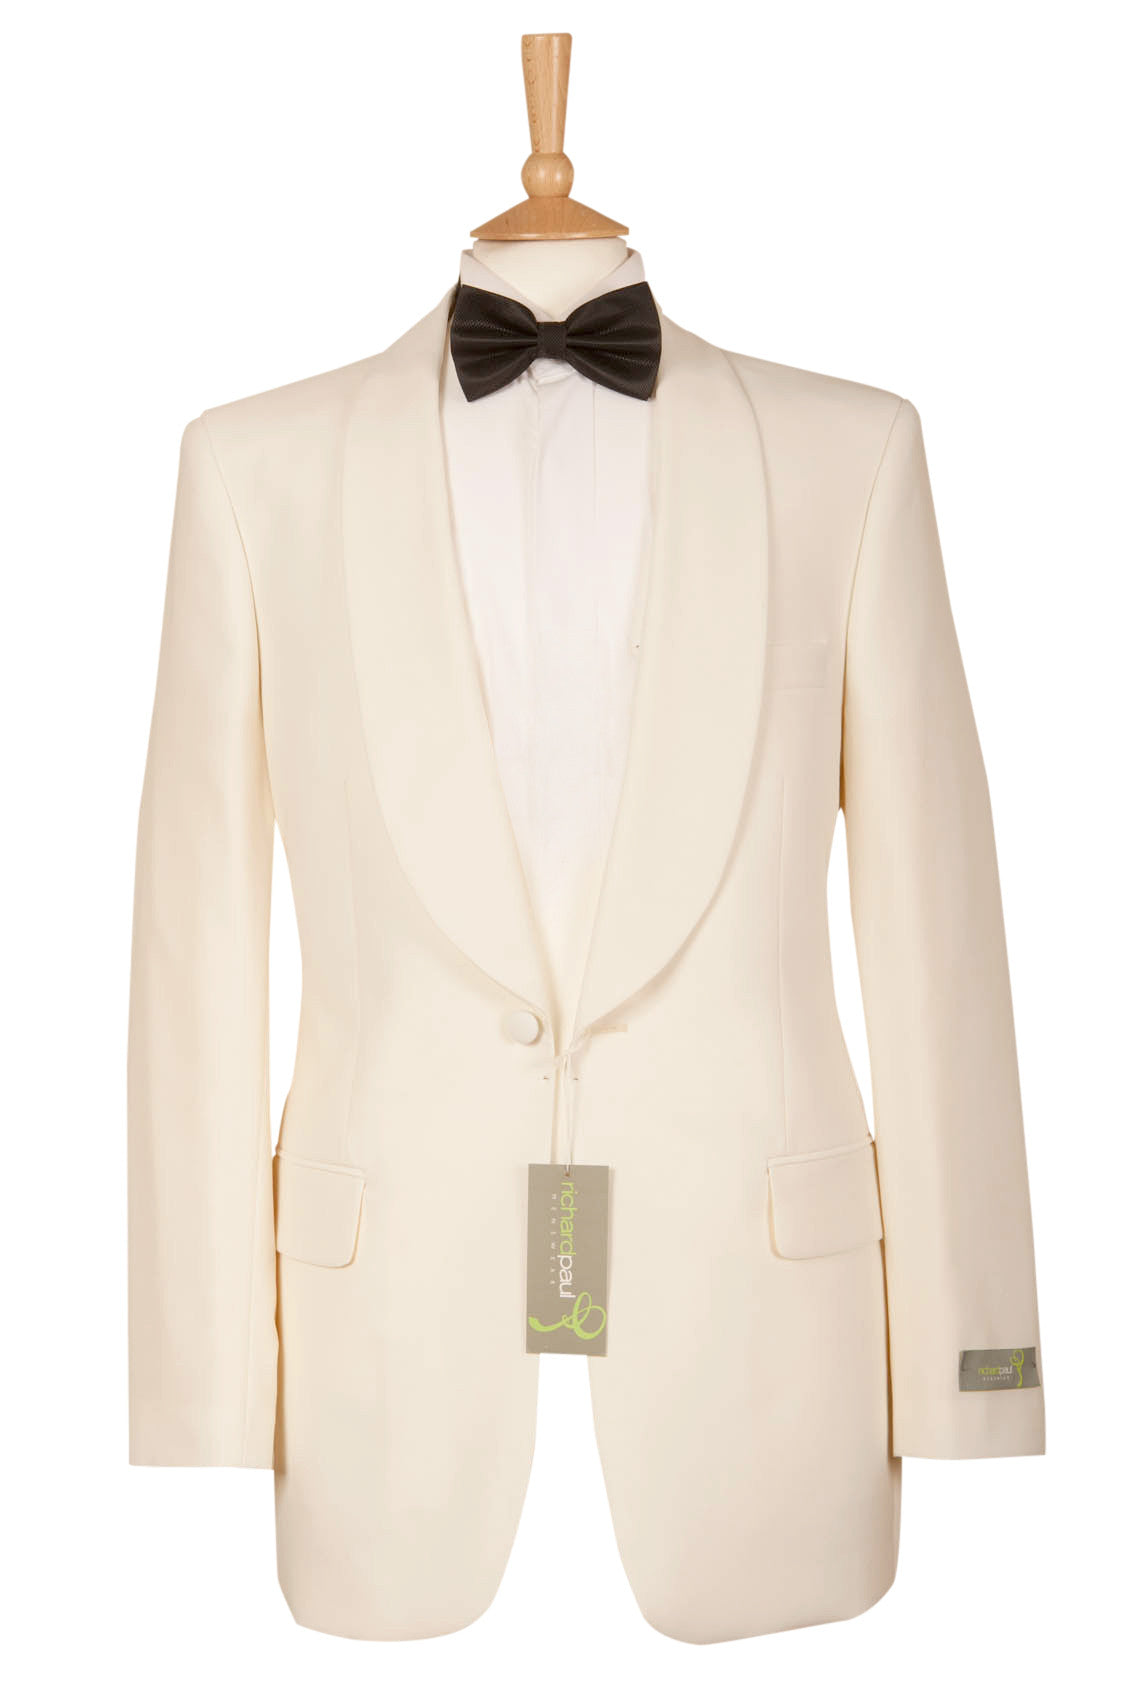 white ivory mens tux tuxedo jacket formal event bond wedding